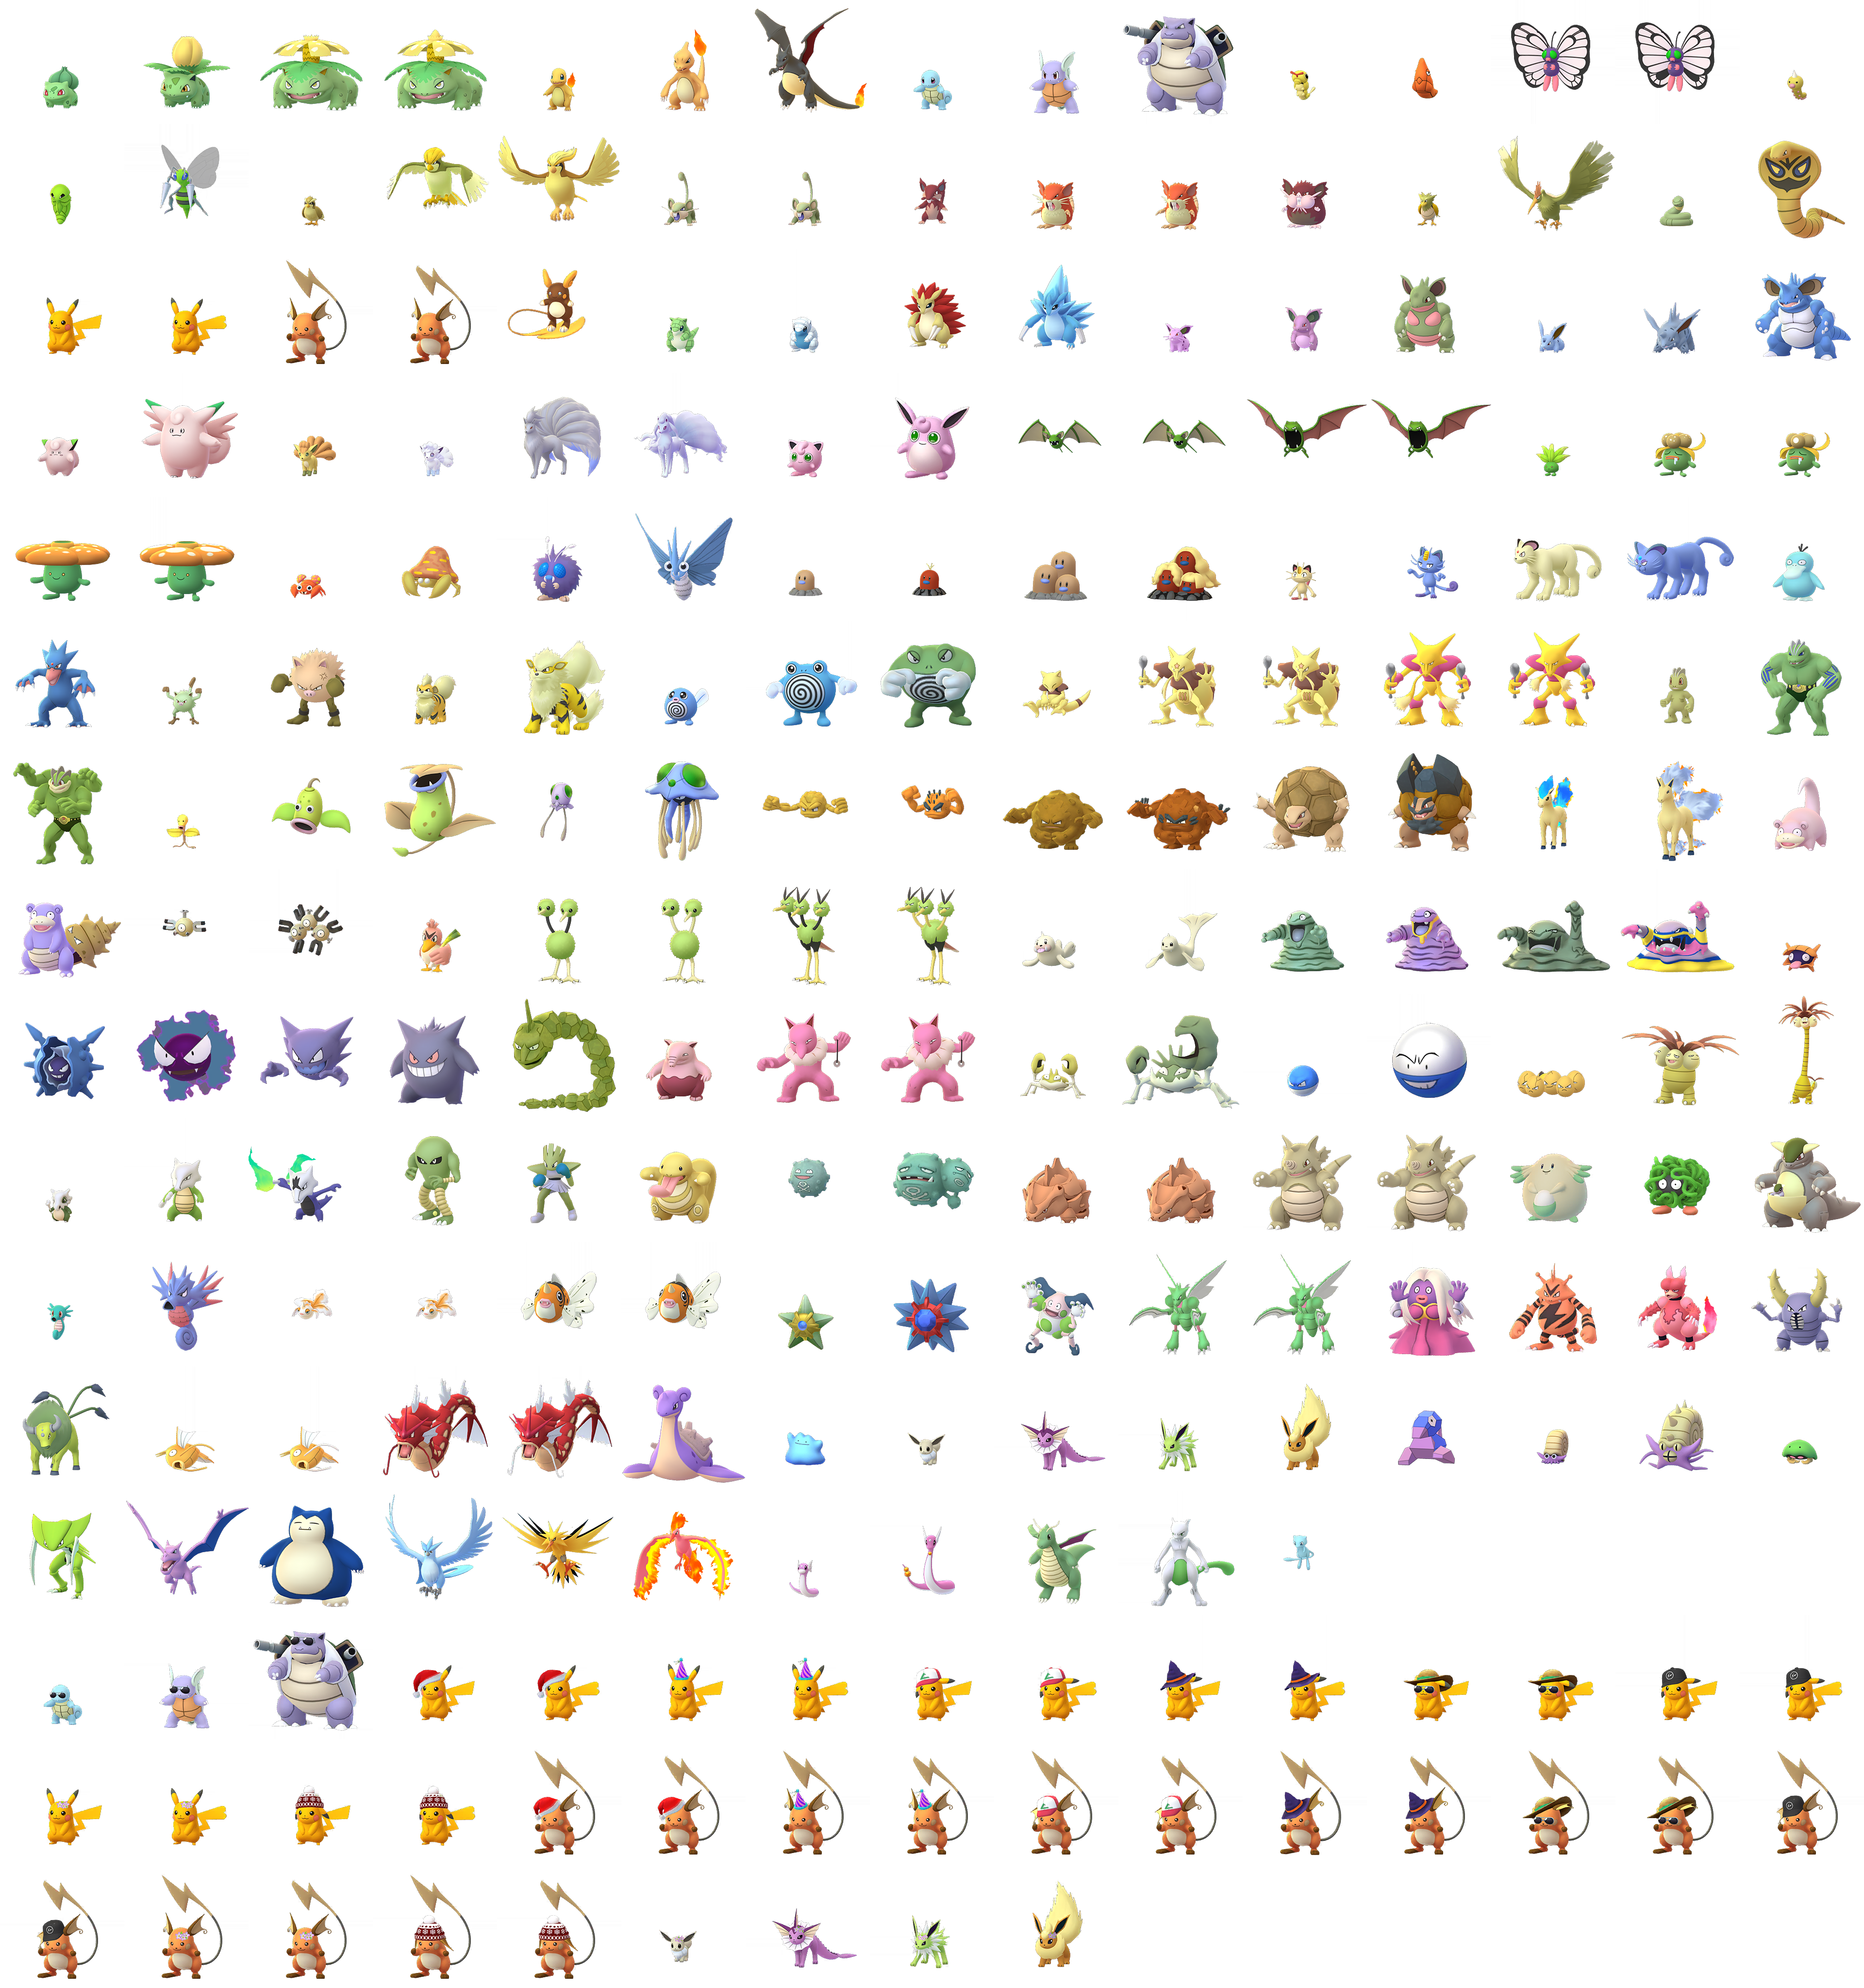 Shiny Pokémon, Pokémon GO Wiki